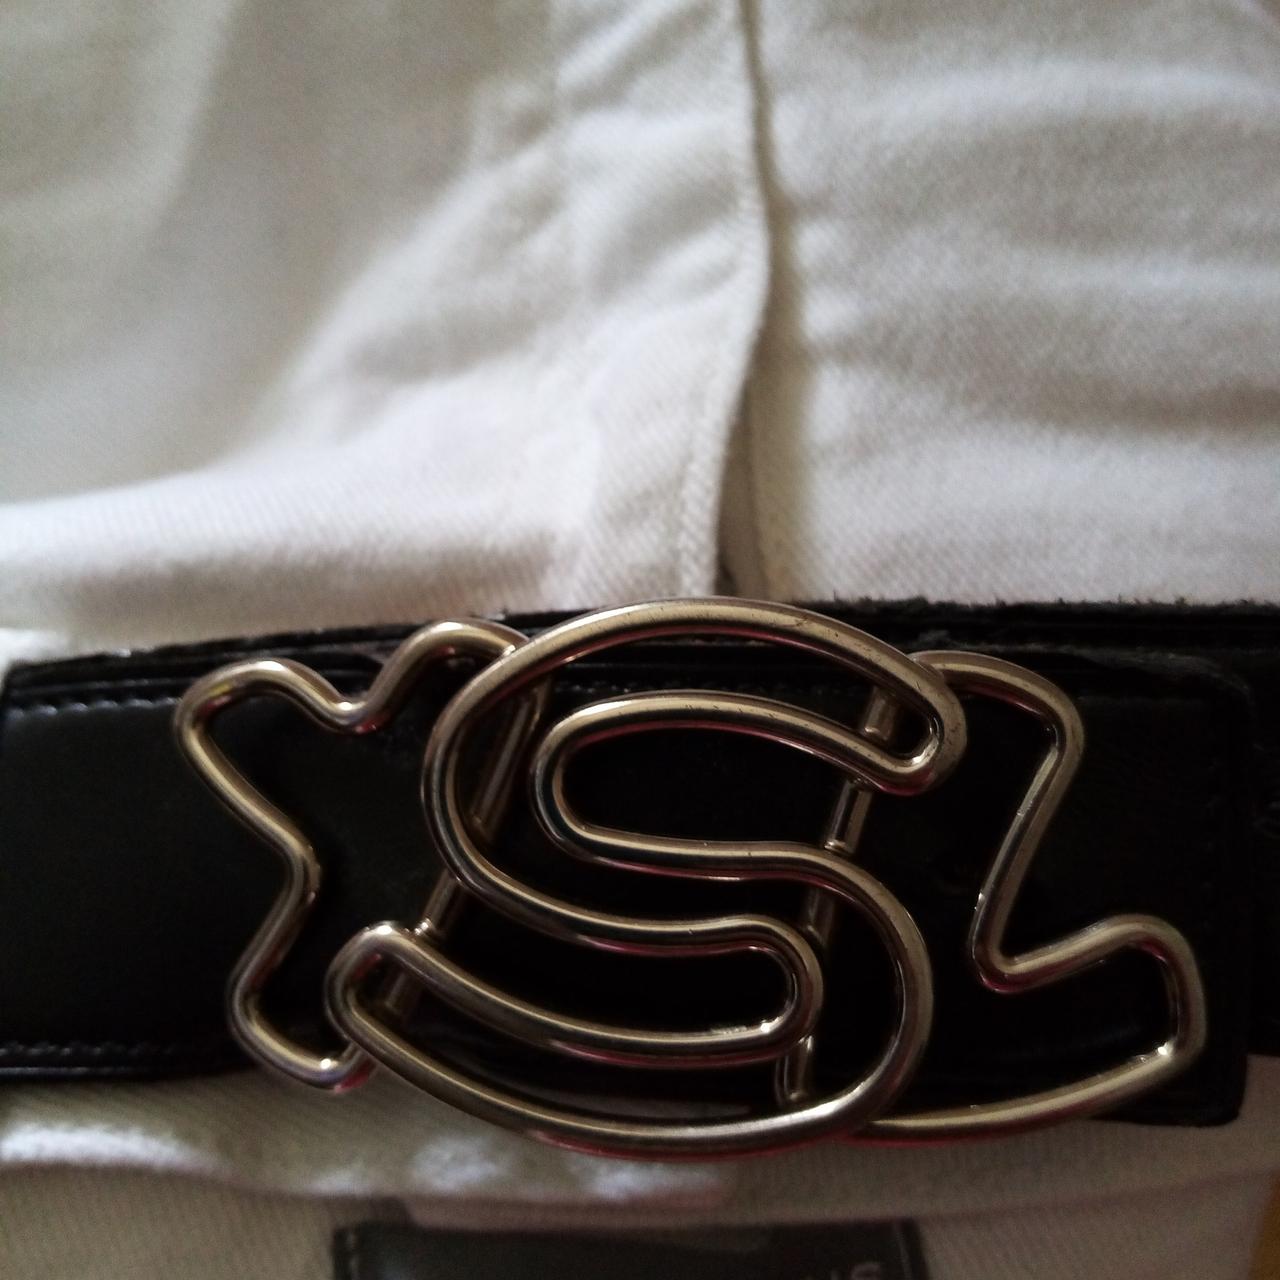 YSL Belt Buckle. Nearly new worn only few times - Depop